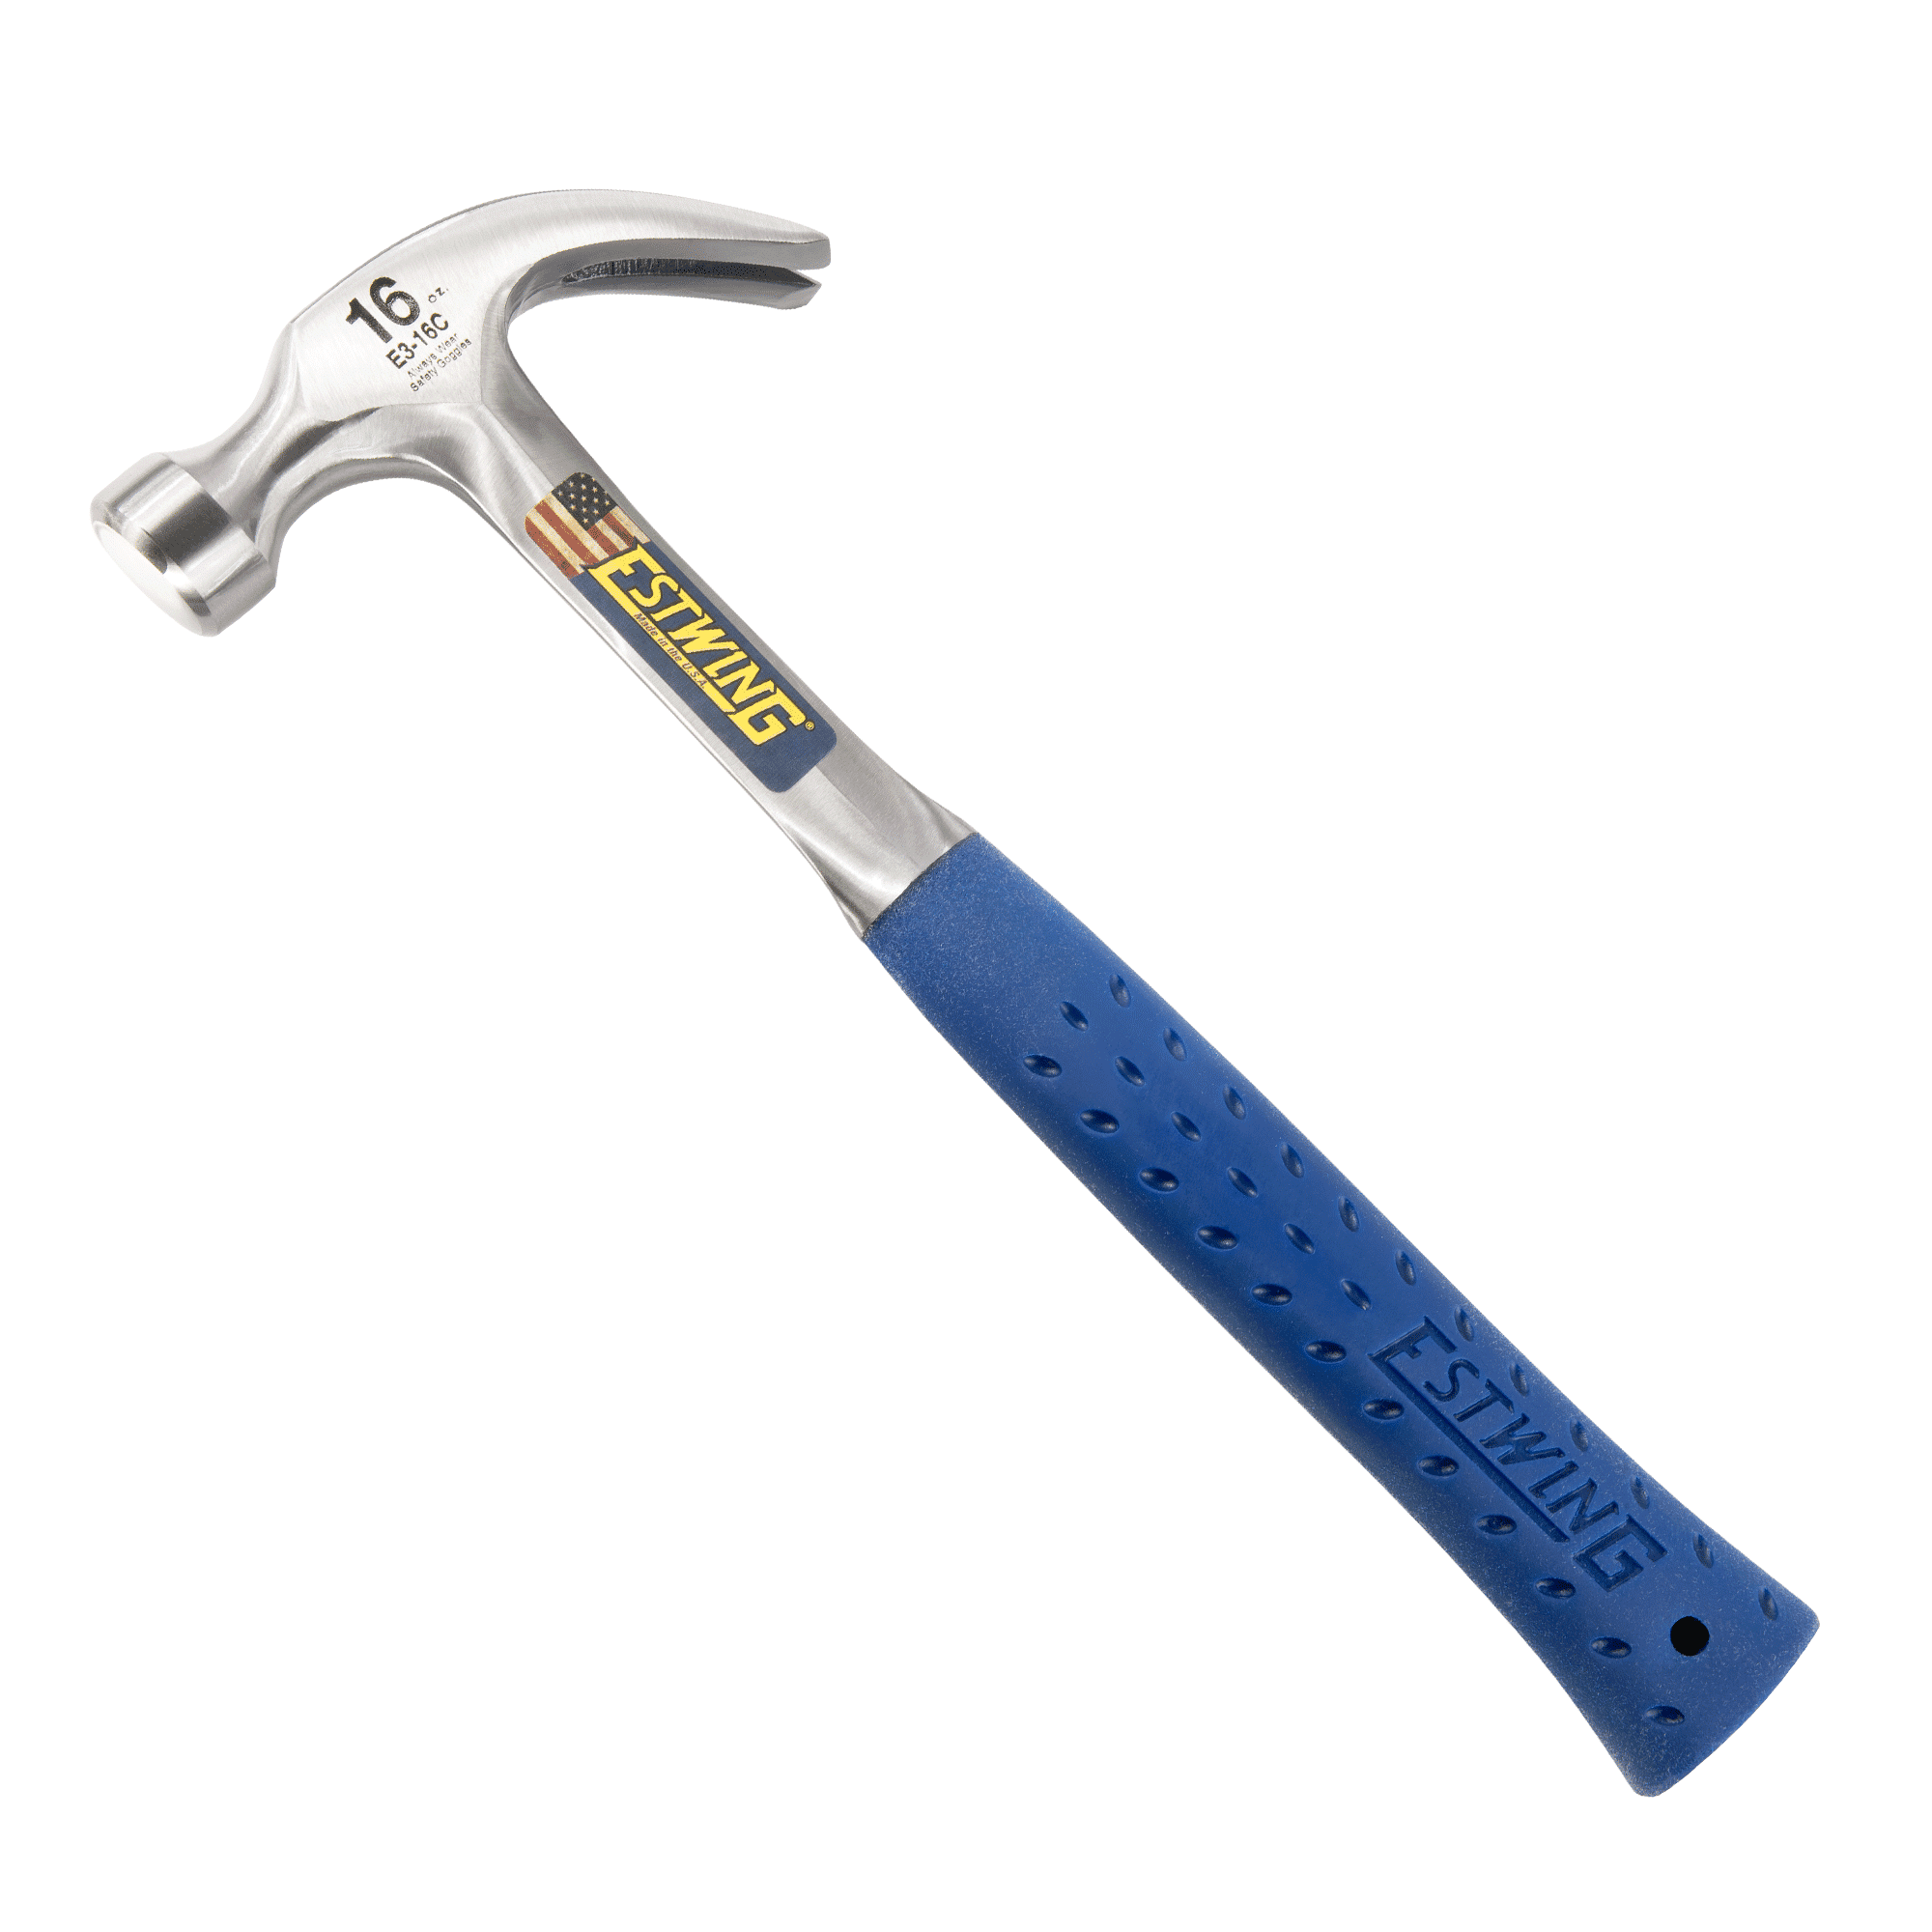 Claw Hammer - Estwing